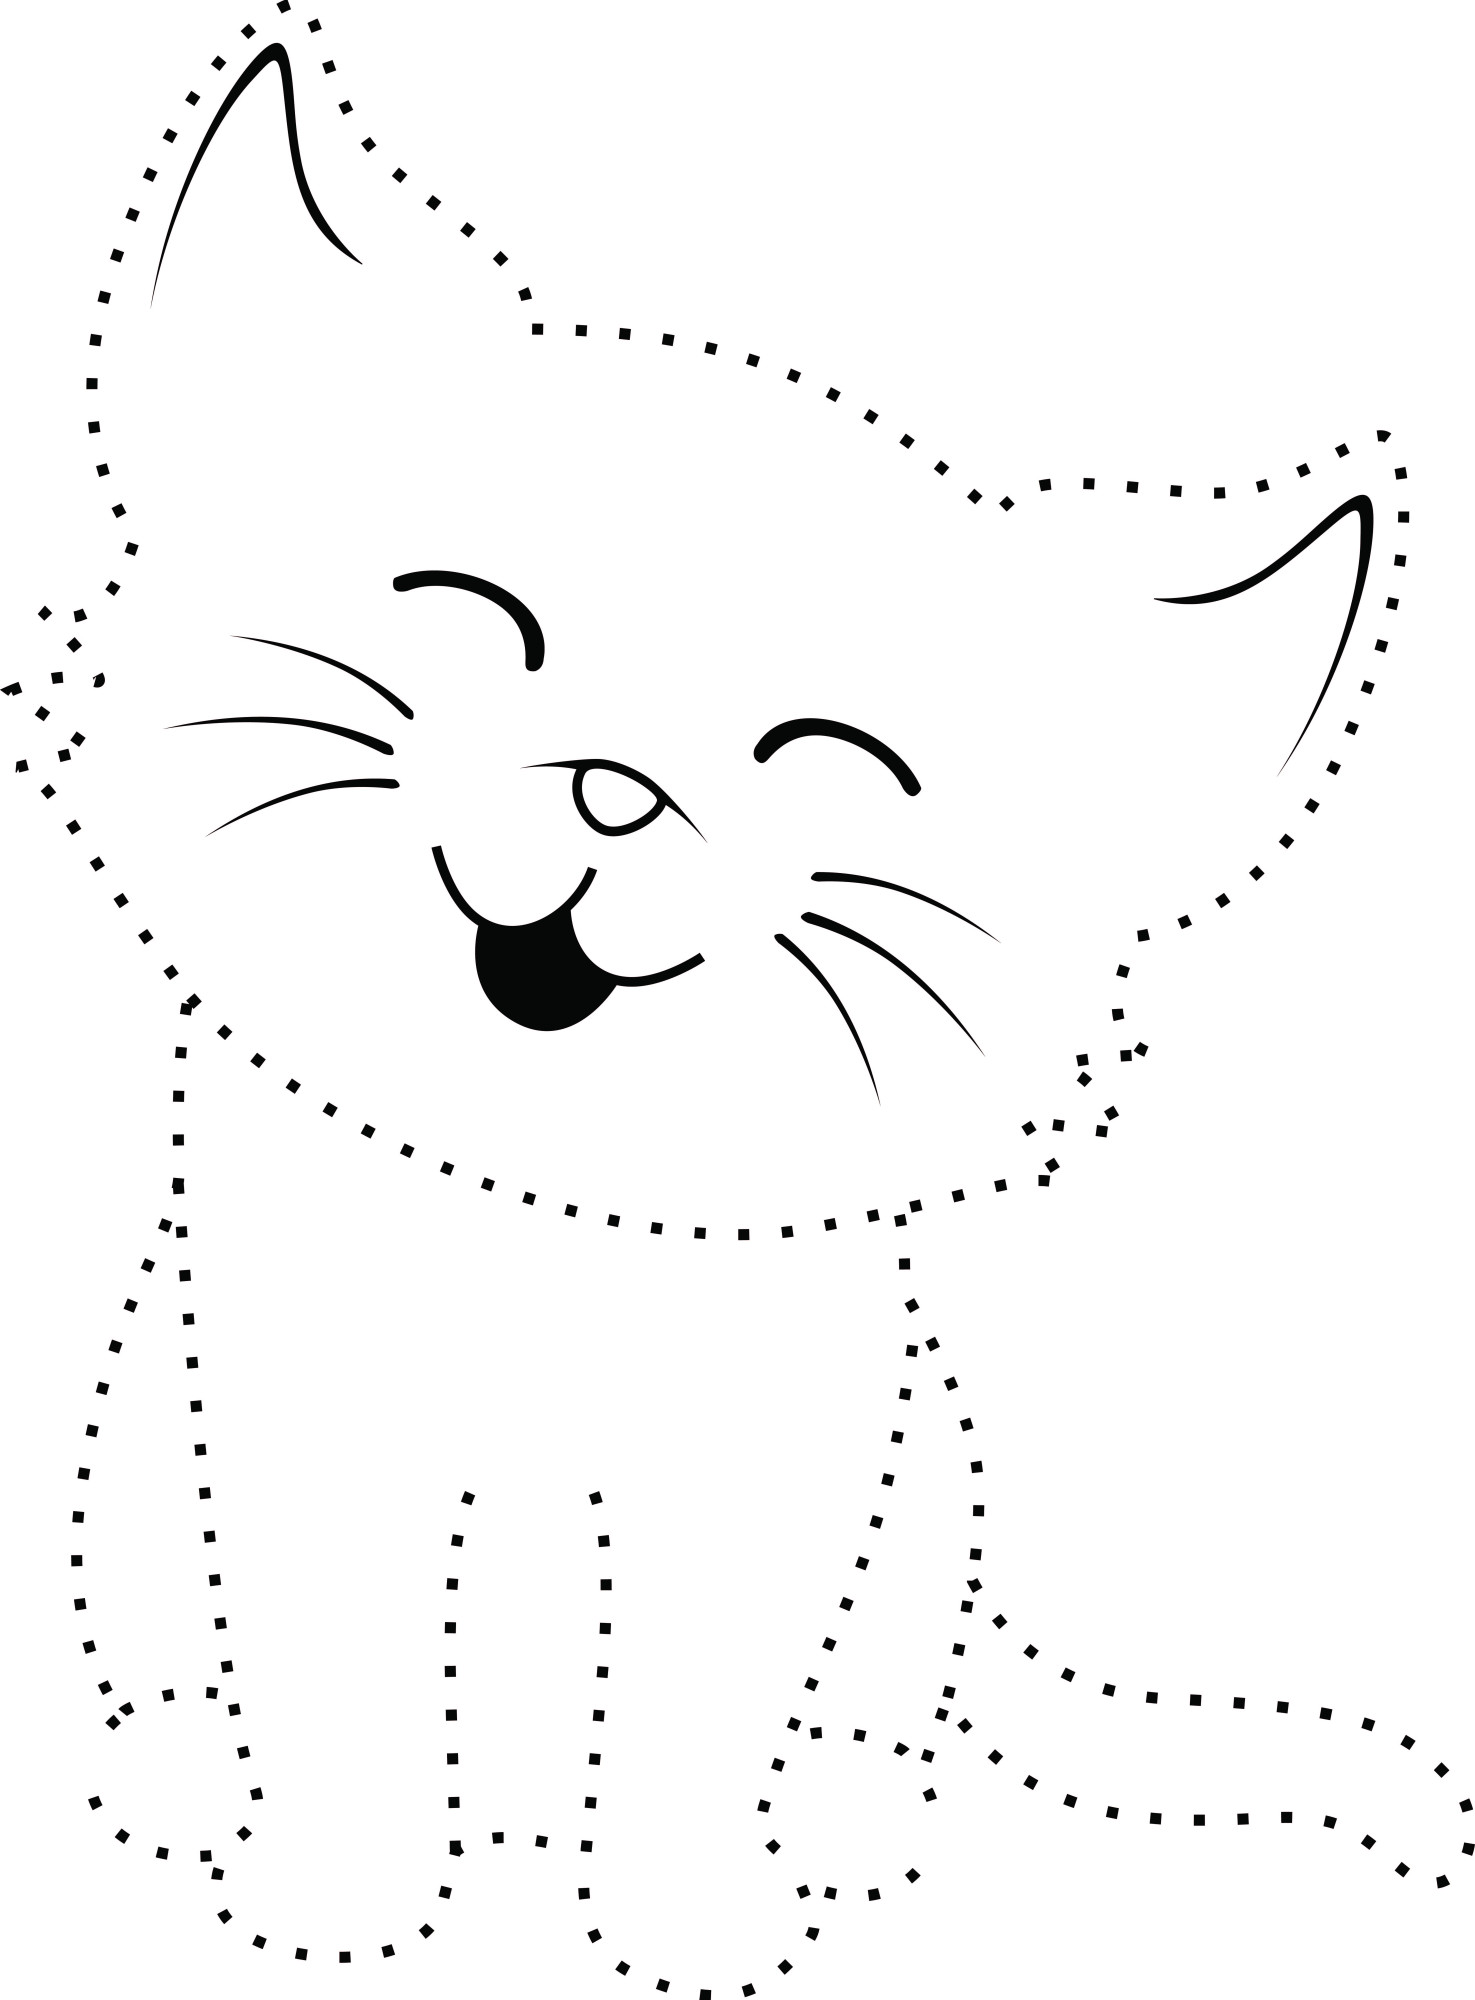 Раскраска для детей: кошка по точкам